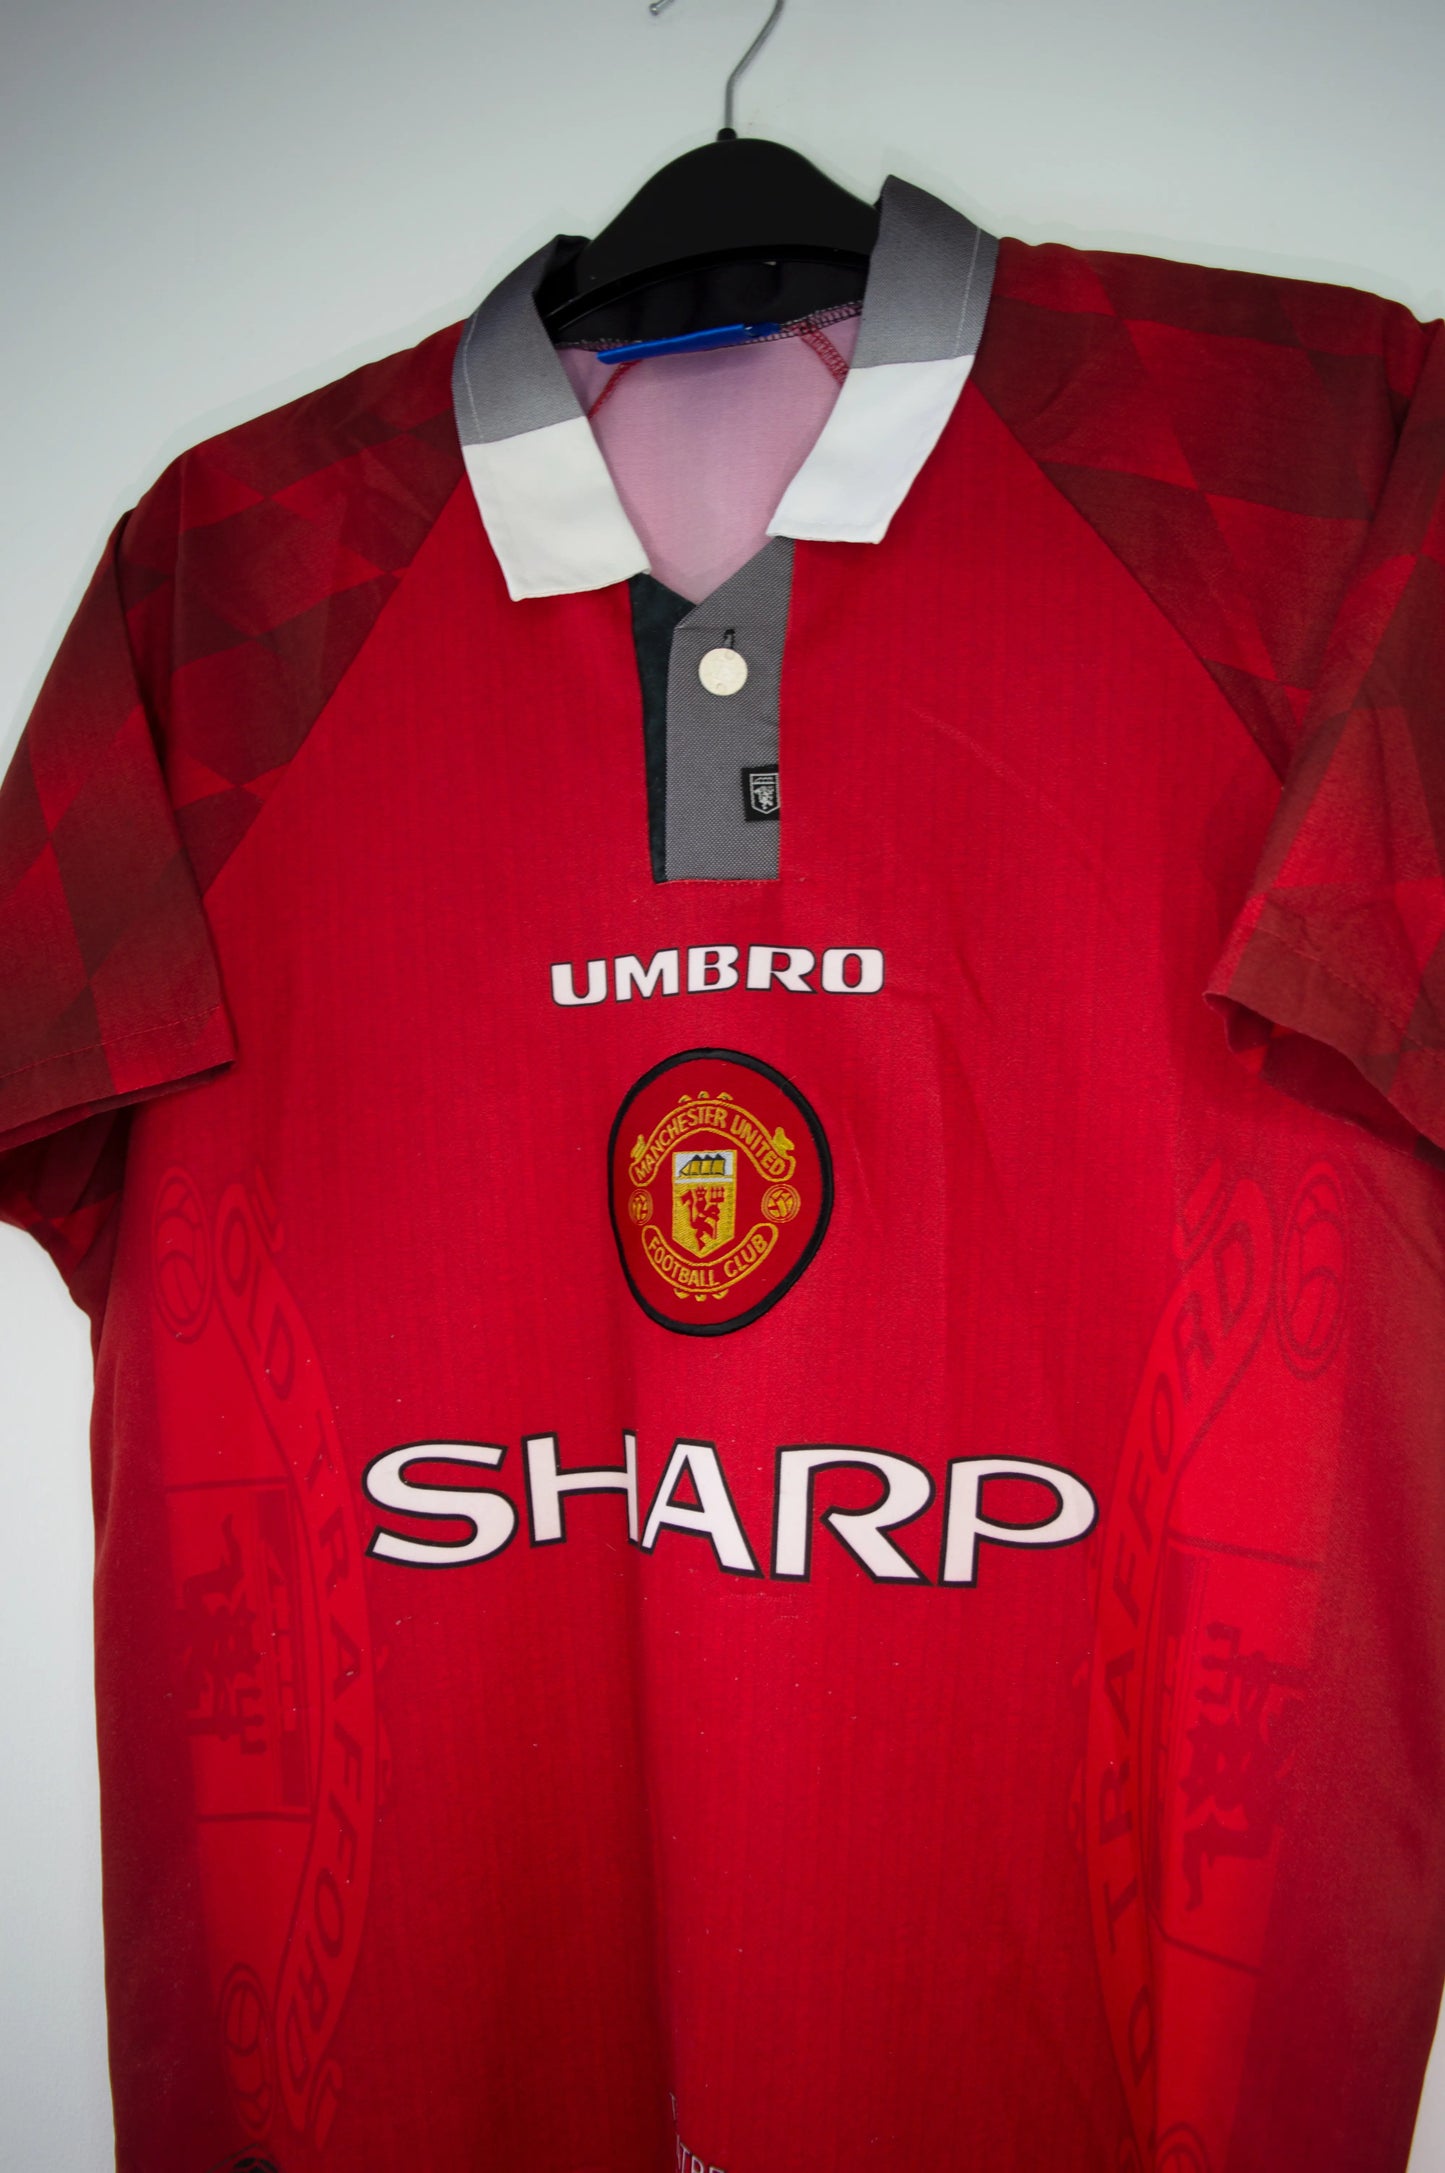 Maillot domicile de Manchester United de la saison 1996-1998. On peut retrouver l'équipementier umbro et le sponsor sharp